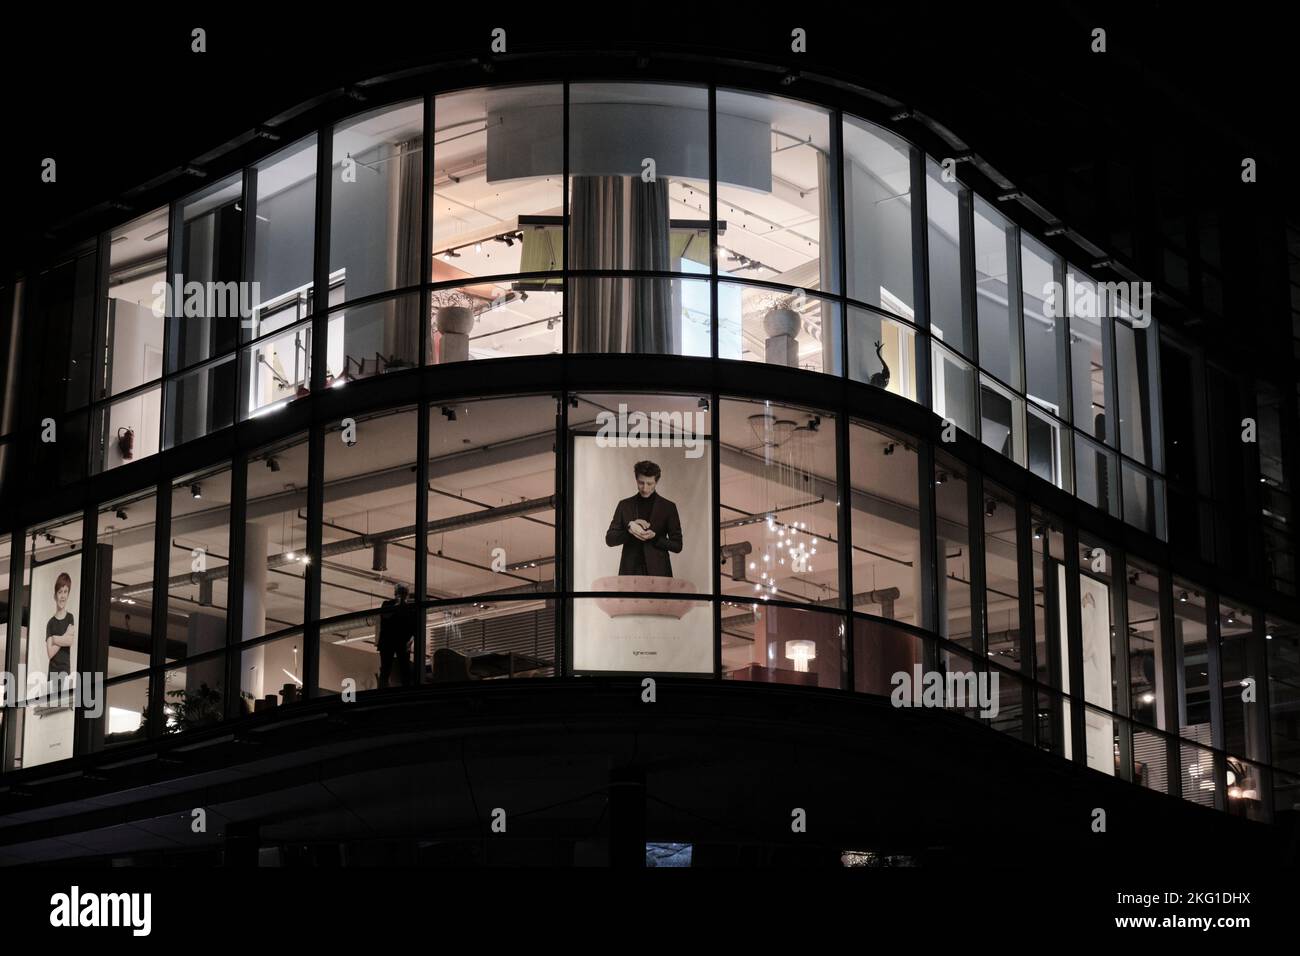 Une nuit sombre à Berlin - Berlin architecture nocturne. Bâtiment architectural commercial de nuit, centre commercial avec publicité dans la fenêtre. Banque D'Images